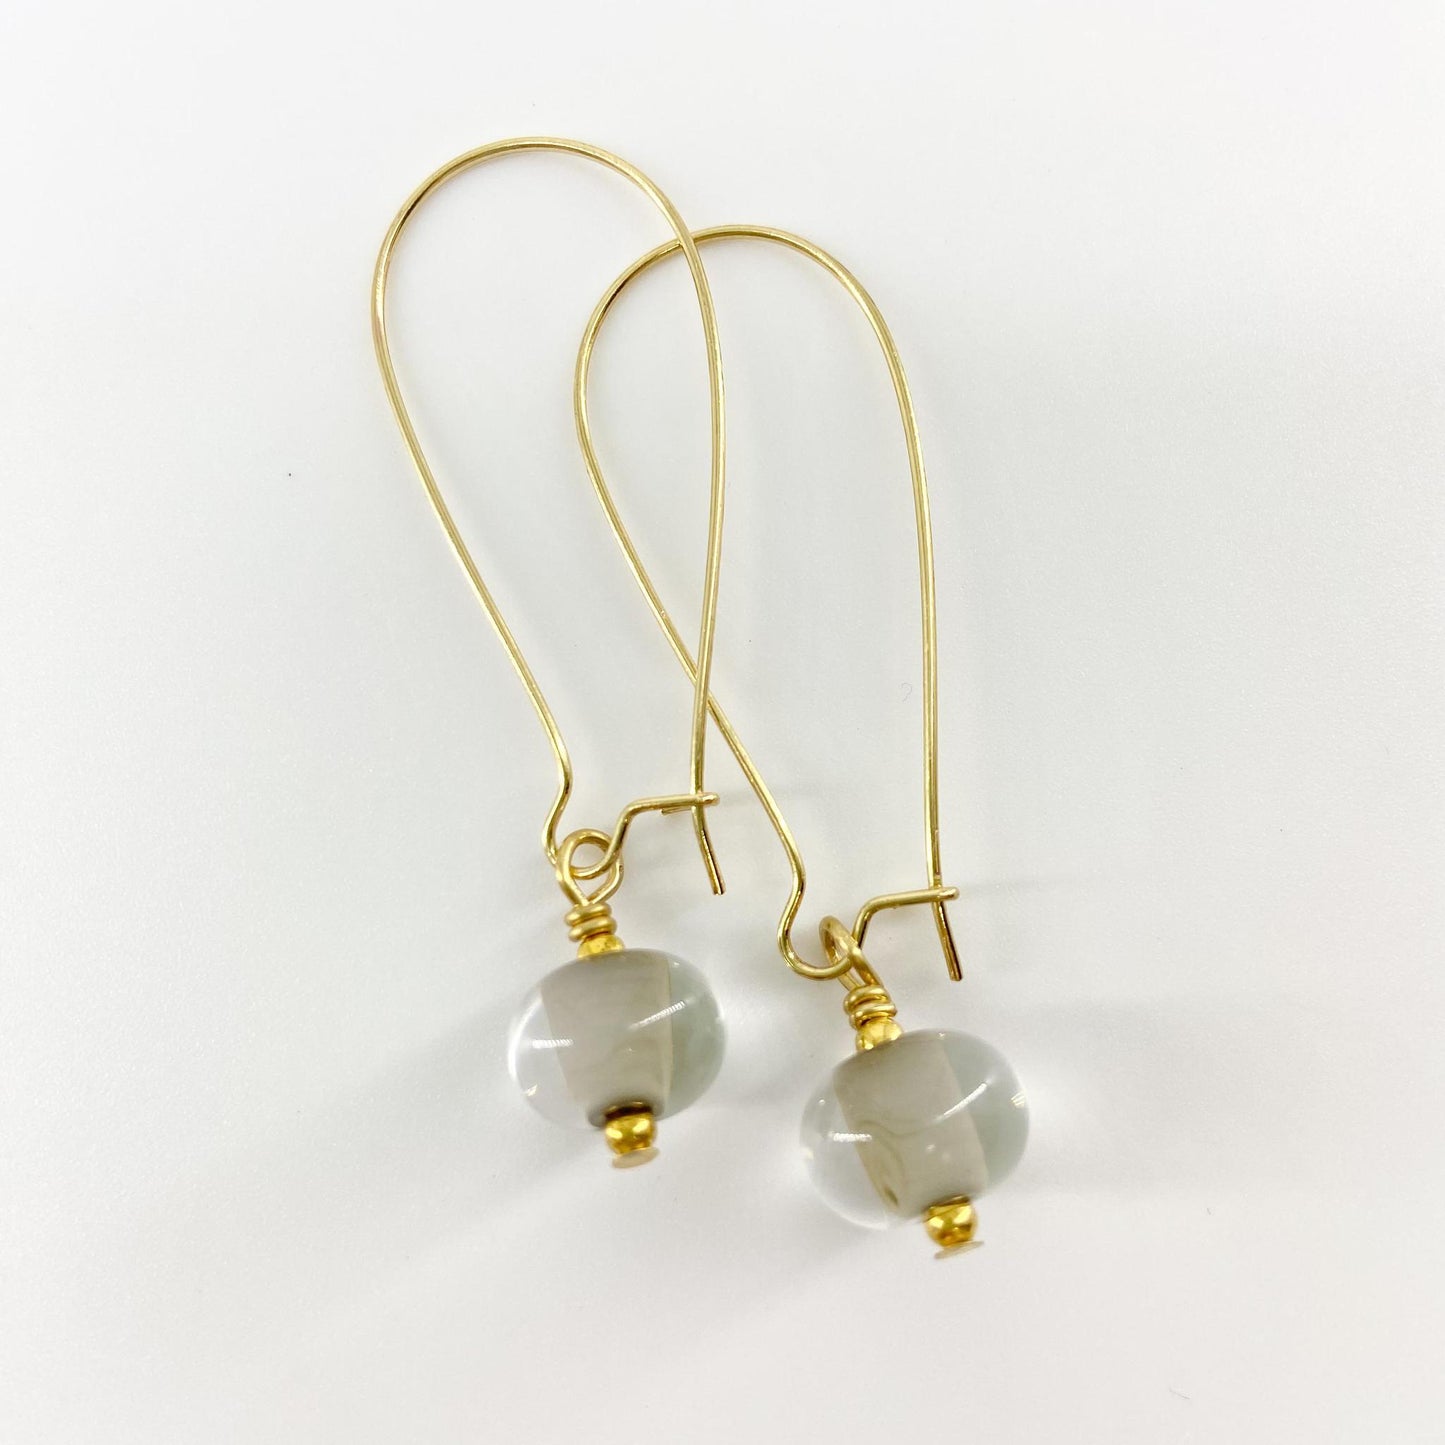 Earrings - Encased Grey - Glass & Goldfill Long Wire (Video)